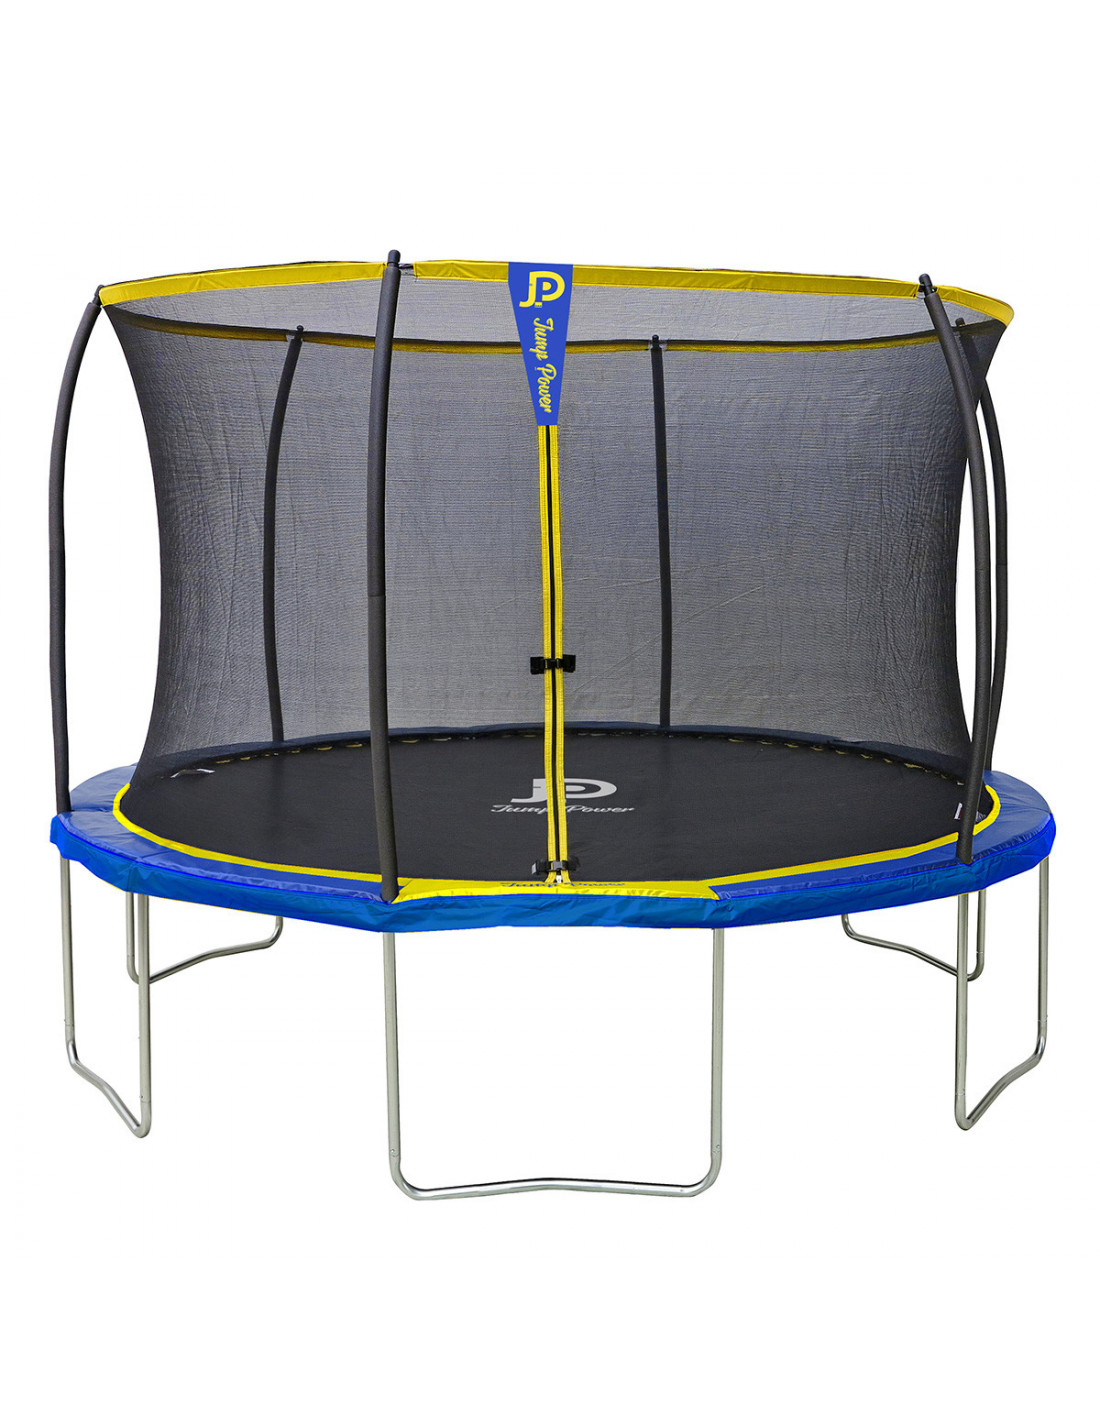 Slank salaris Psychologisch Trampoline Jump Power 366 cm - N°1 van de trampoline in Frankrijk -  superieur aan Decathlon